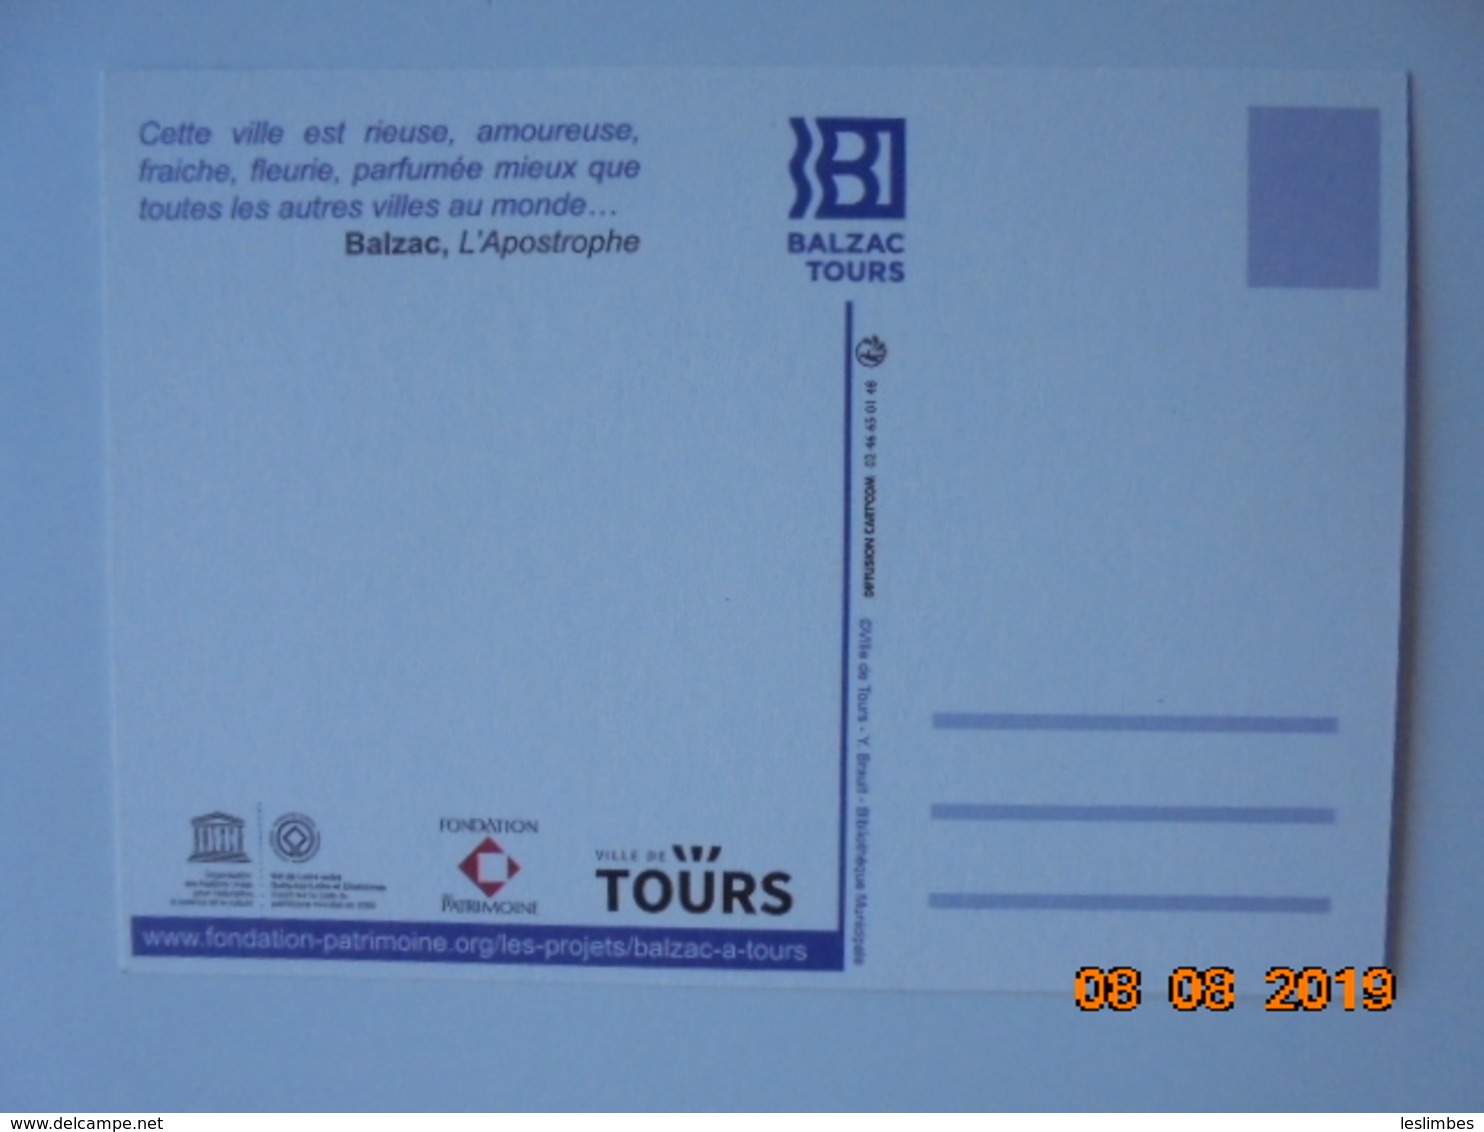 Balzac Tours Souscription Publique Pour Une Oeuve Contemporaine 11.2018 - 11.2019. Ville De Tours - Tours